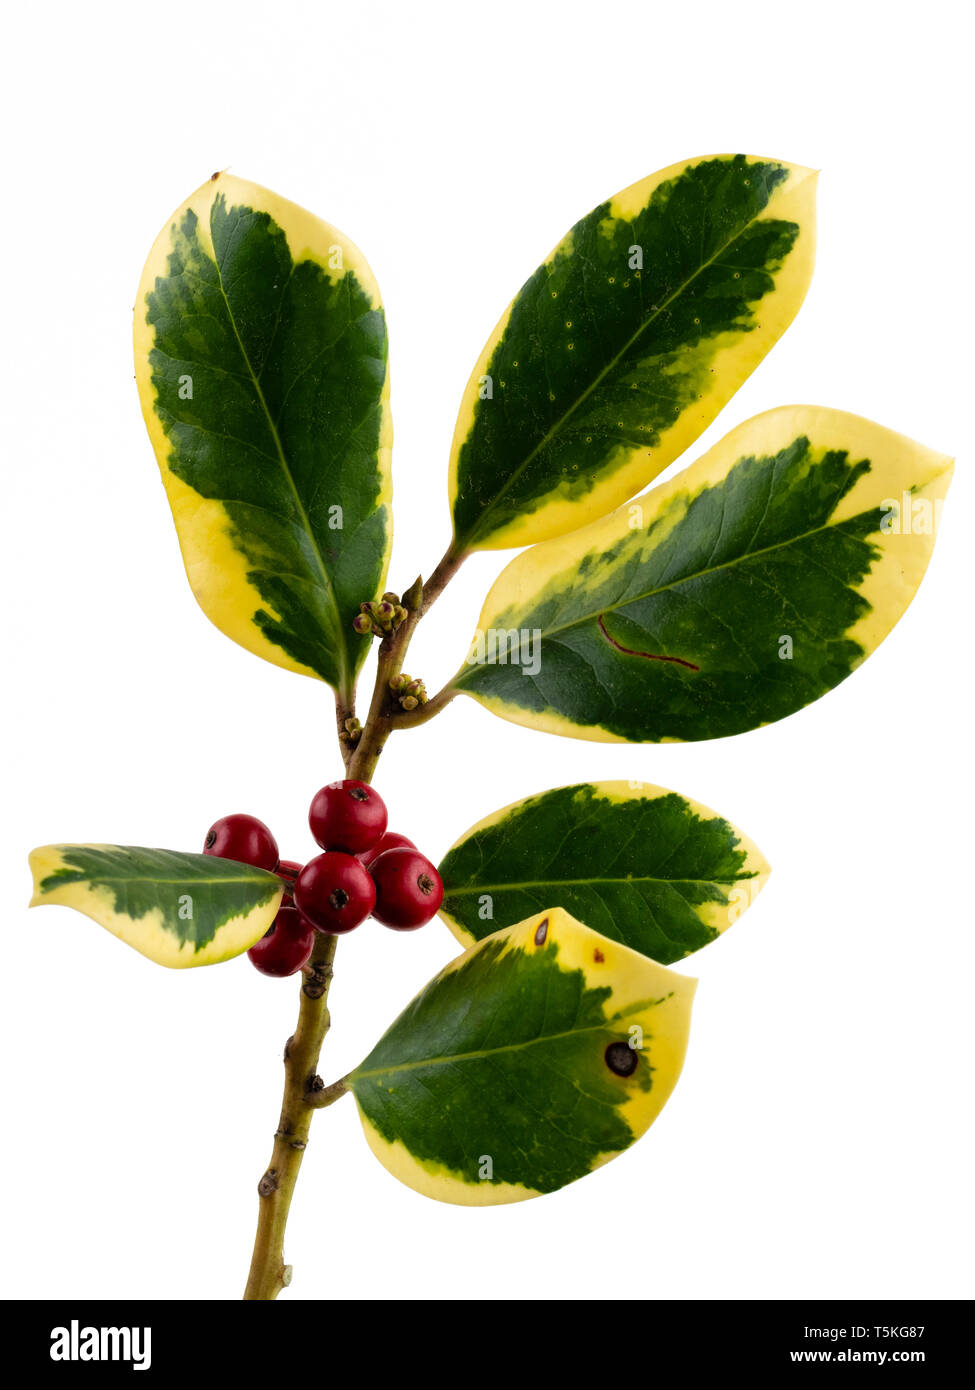 Rote Beeren und Gelb panaschierten immergrüne Laub der ornamentalen Holly, Ilex x altaclerensis 'Golden King', auf weißem Hintergrund Stockfoto